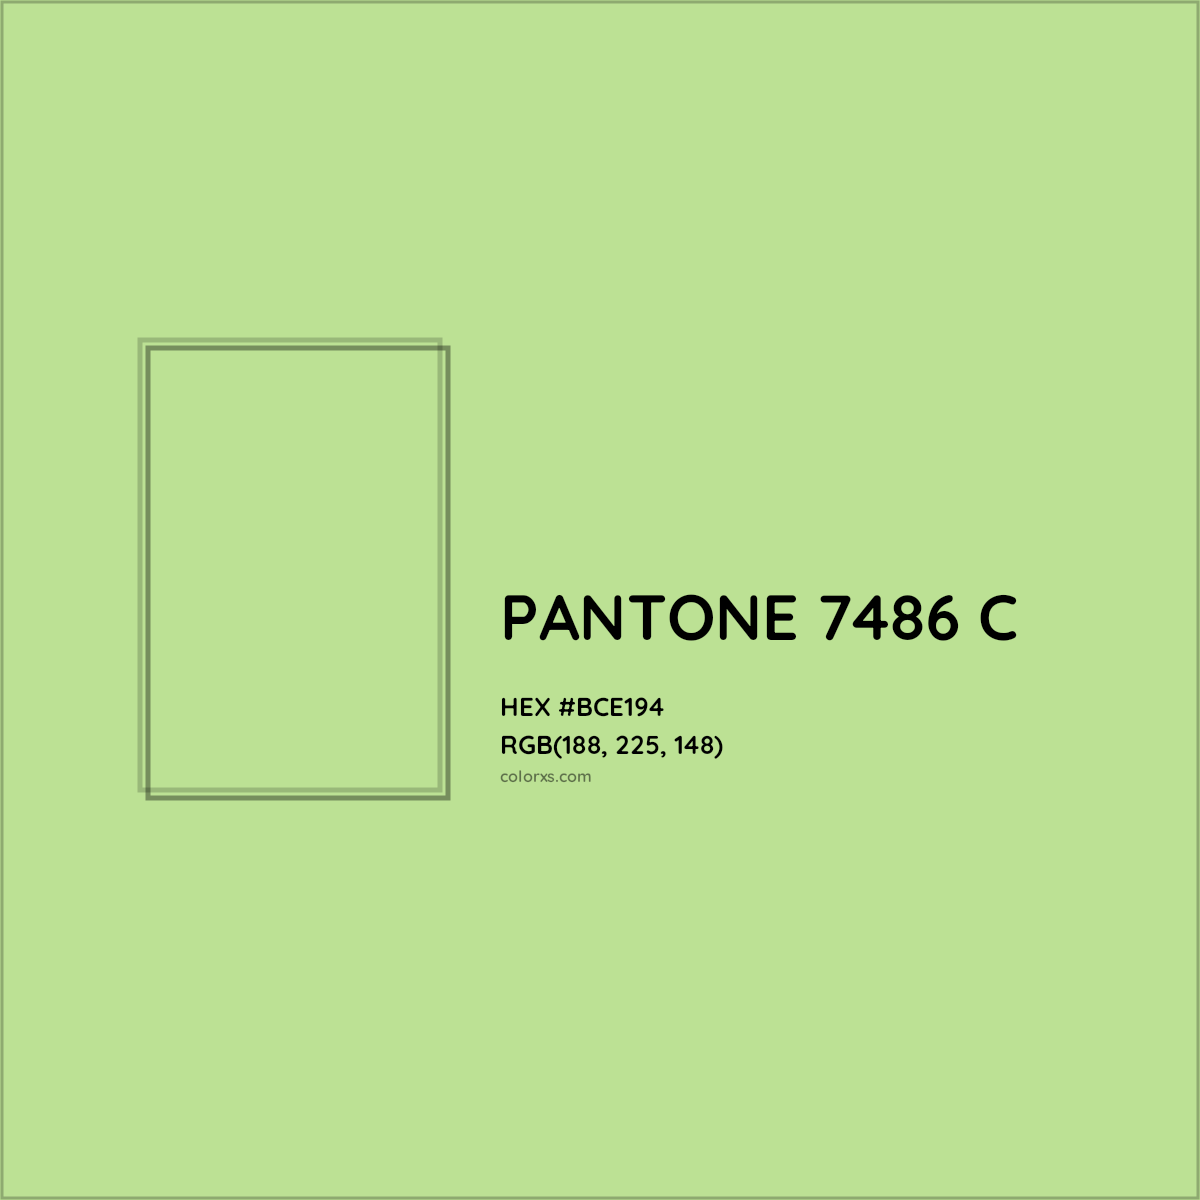 HEX #BCE194 PANTONE 7486 C CMS Pantone PMS - Color Code